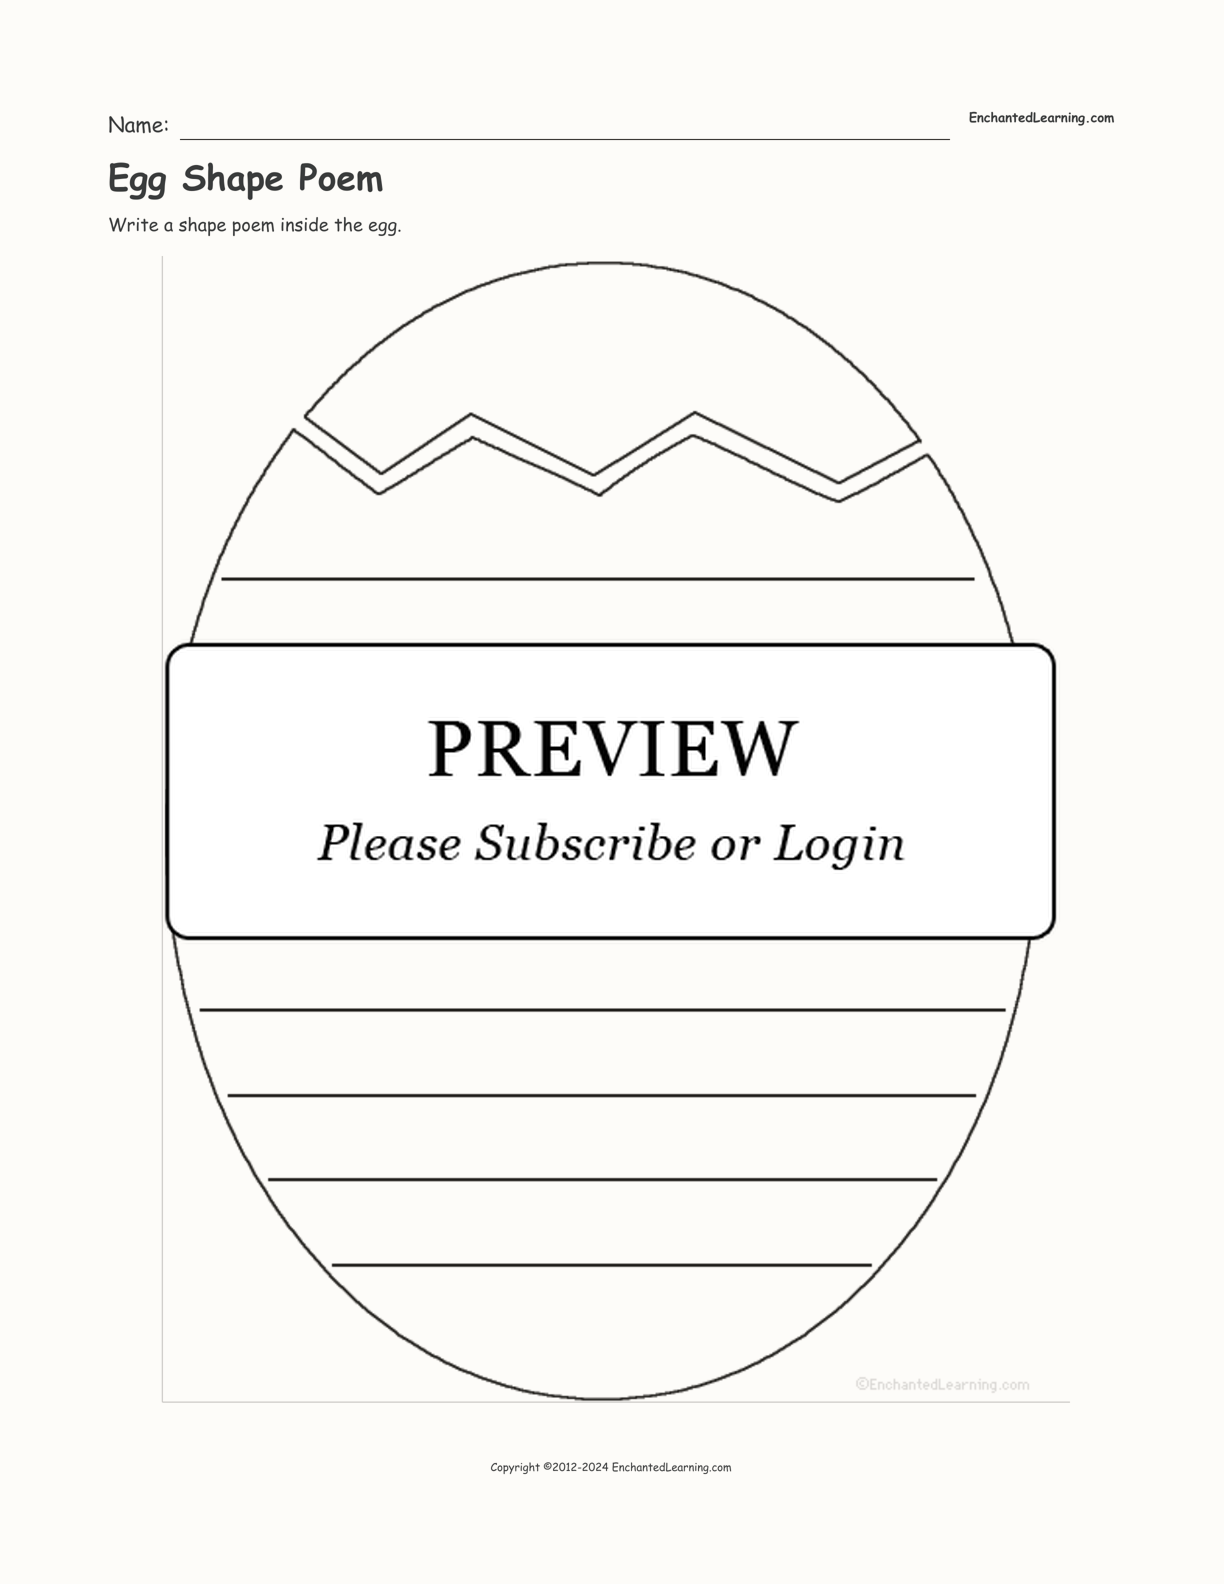 Egg Shape Poem interactive worksheet page 1